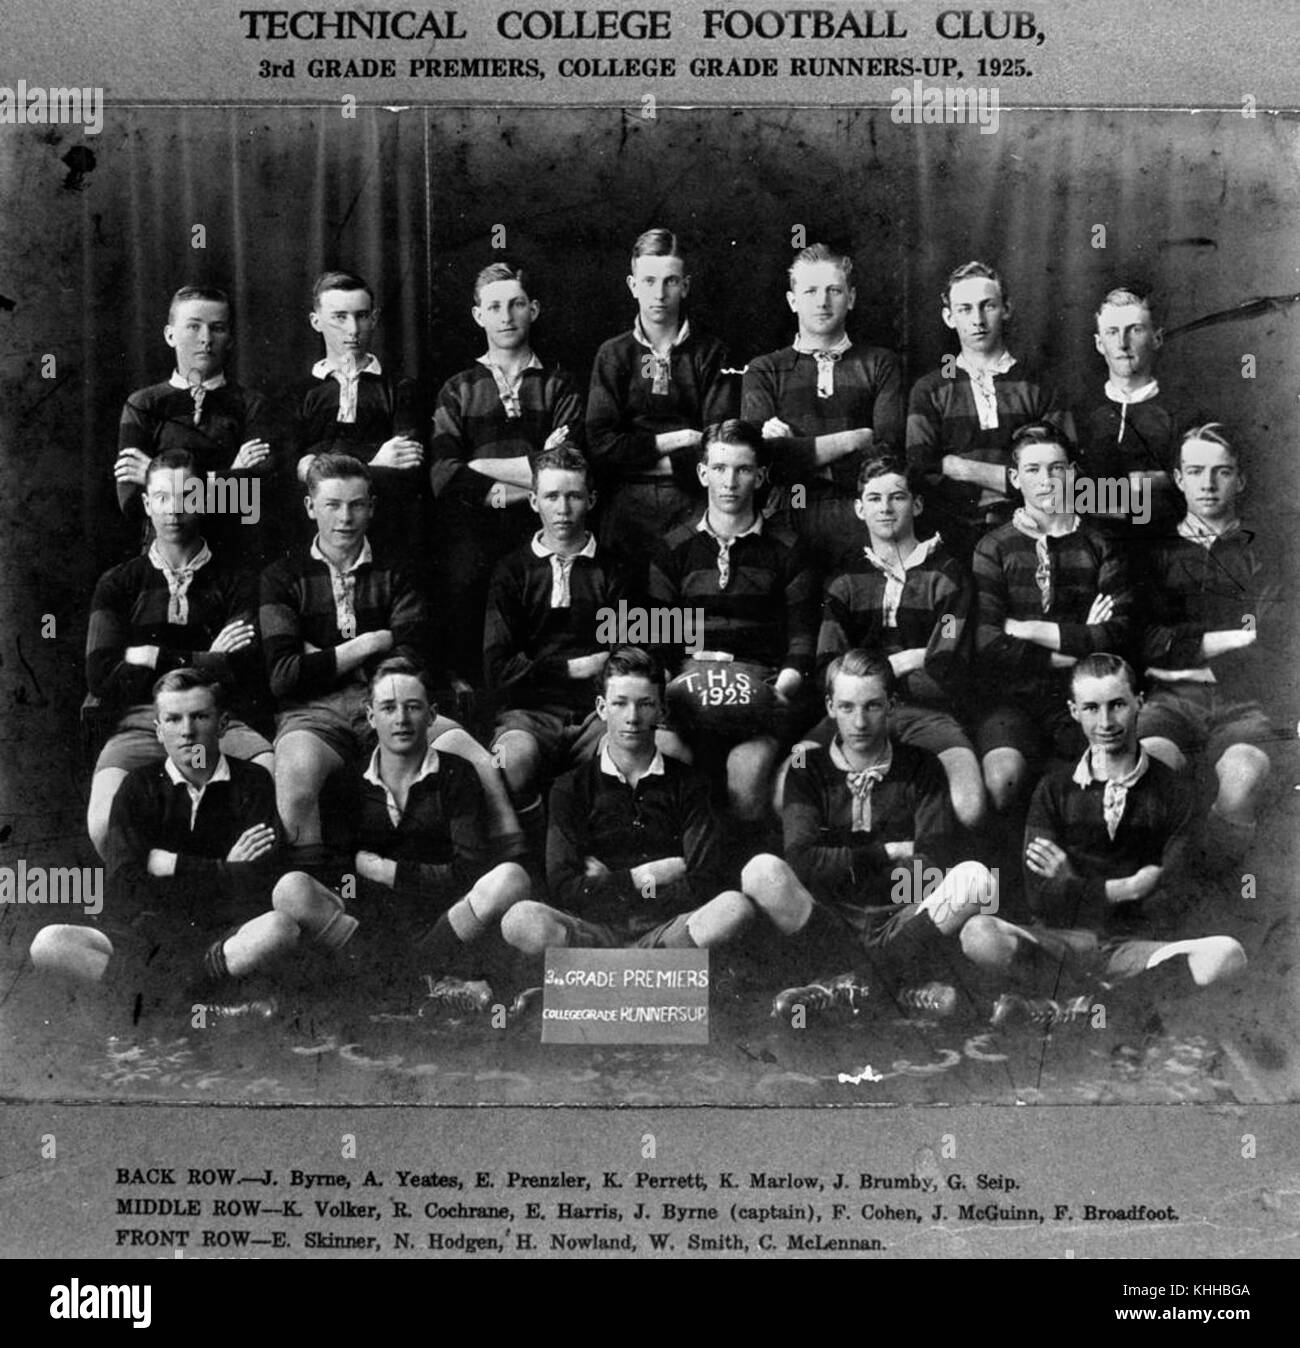 1 140047 Rugby Union Team aus der Technischen Hochschule, 3. Klasse Premieren und College grad Nächstplatzierten, 1925 Stockfoto